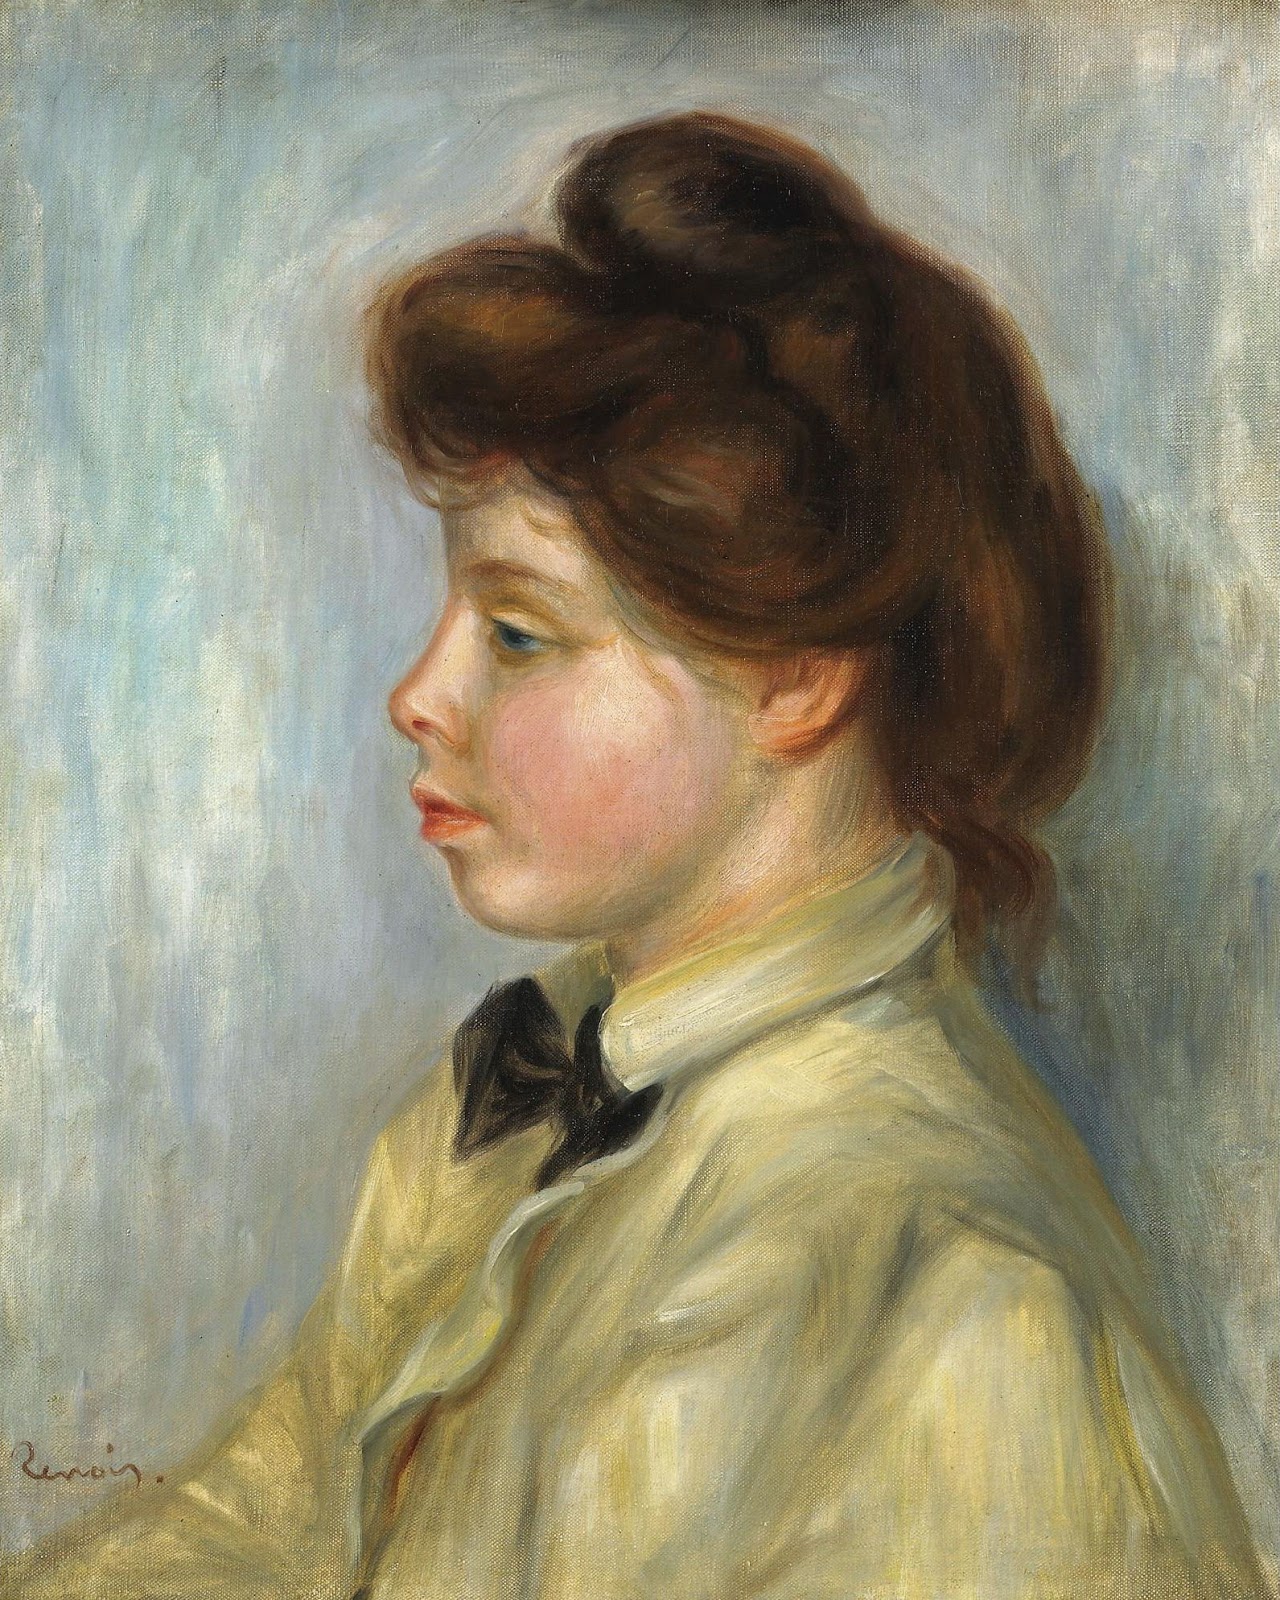 Pierre+Auguste+Renoir-1841-1-19 (904).jpg